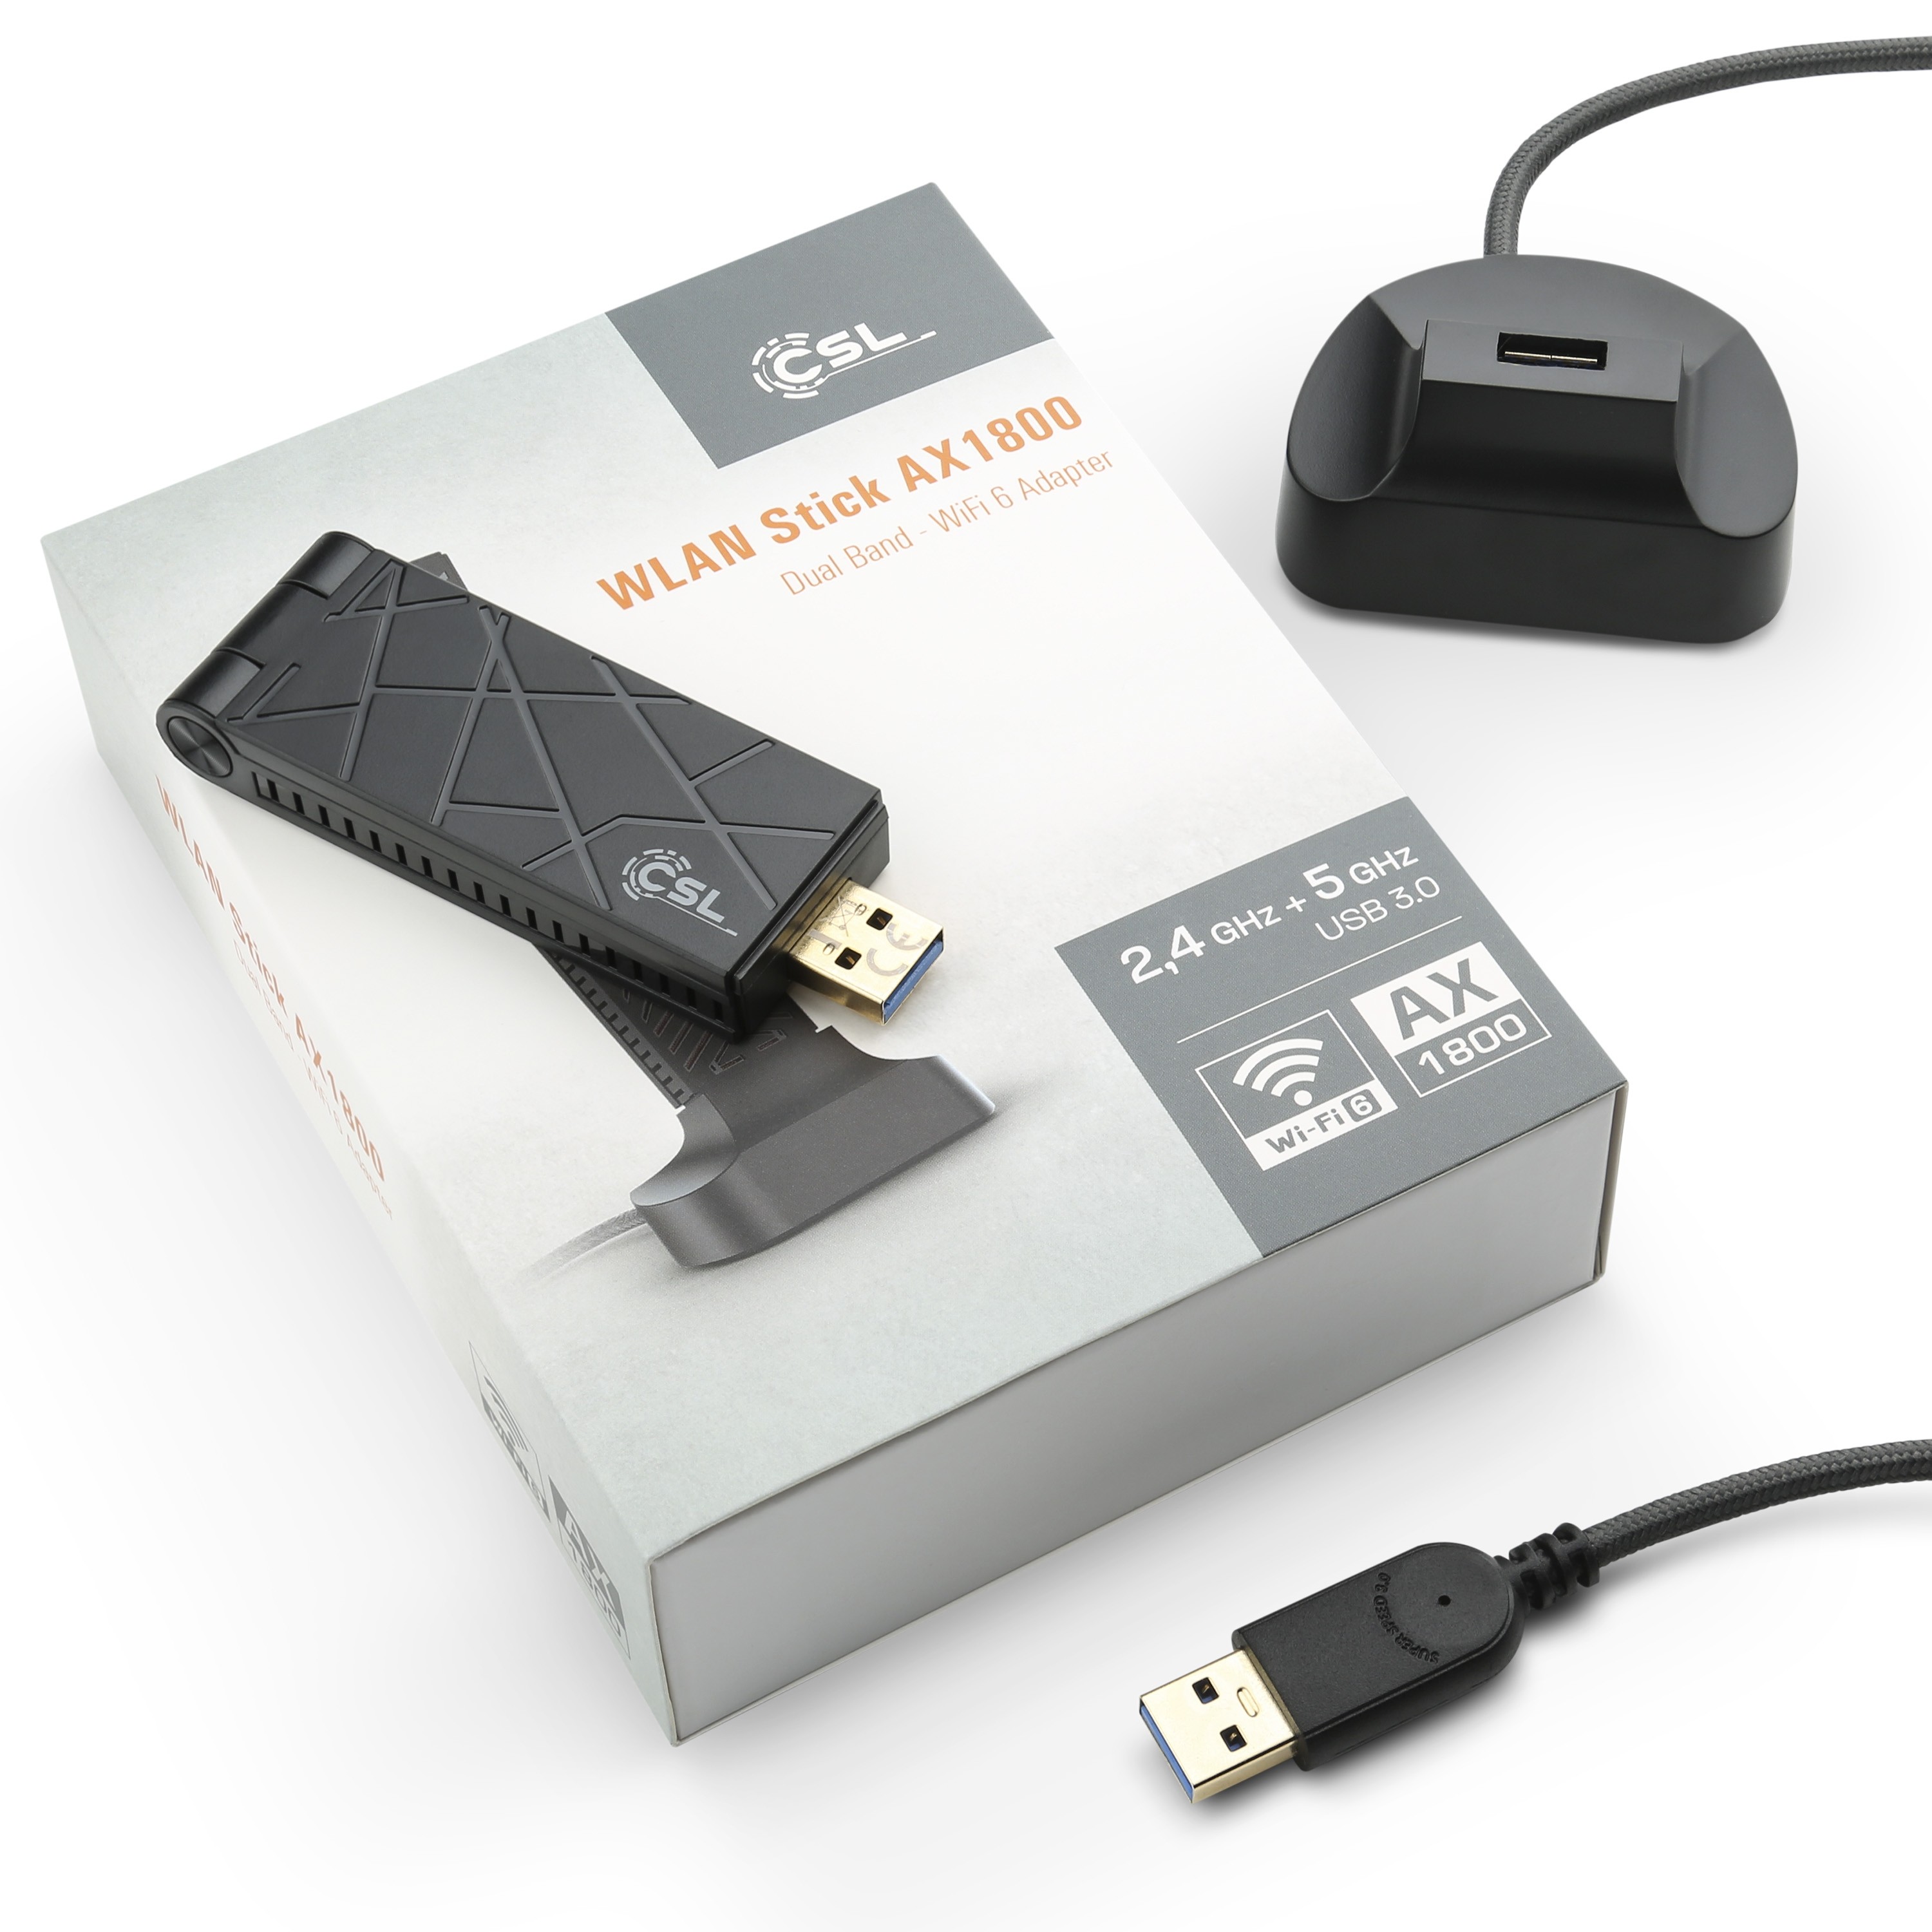 CSL Computer  Clé USB WLAN 1200 MBit/s (600 MBit/s @ 2,4 GHz) - CSL AX1800  + extension USB